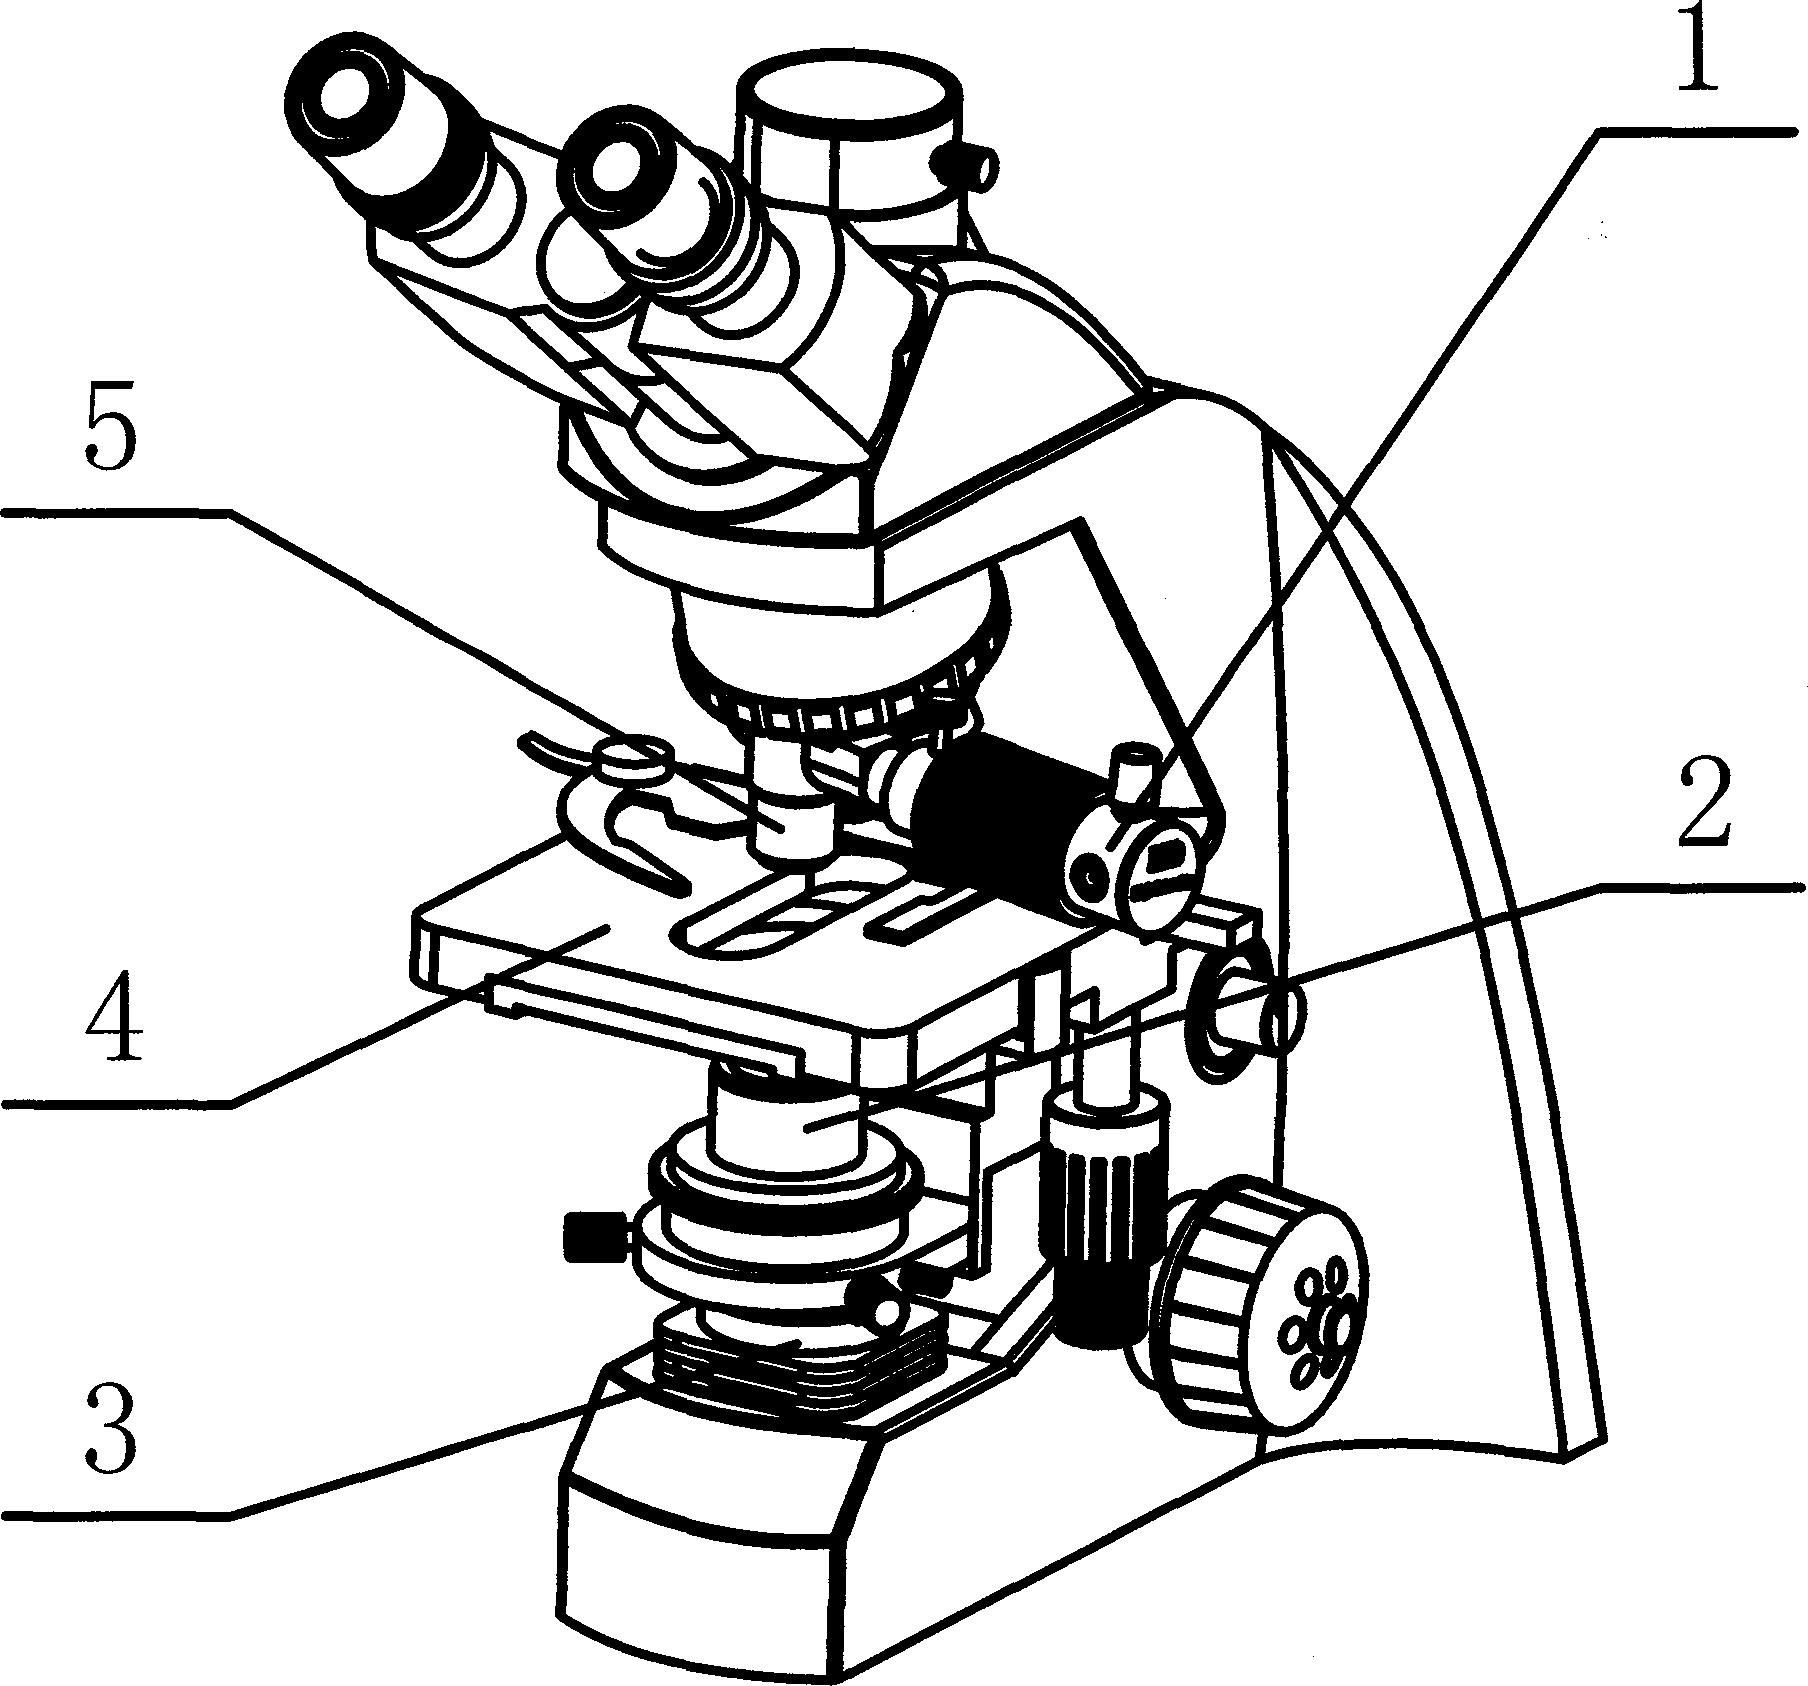 显微镜结构图 简笔画图片